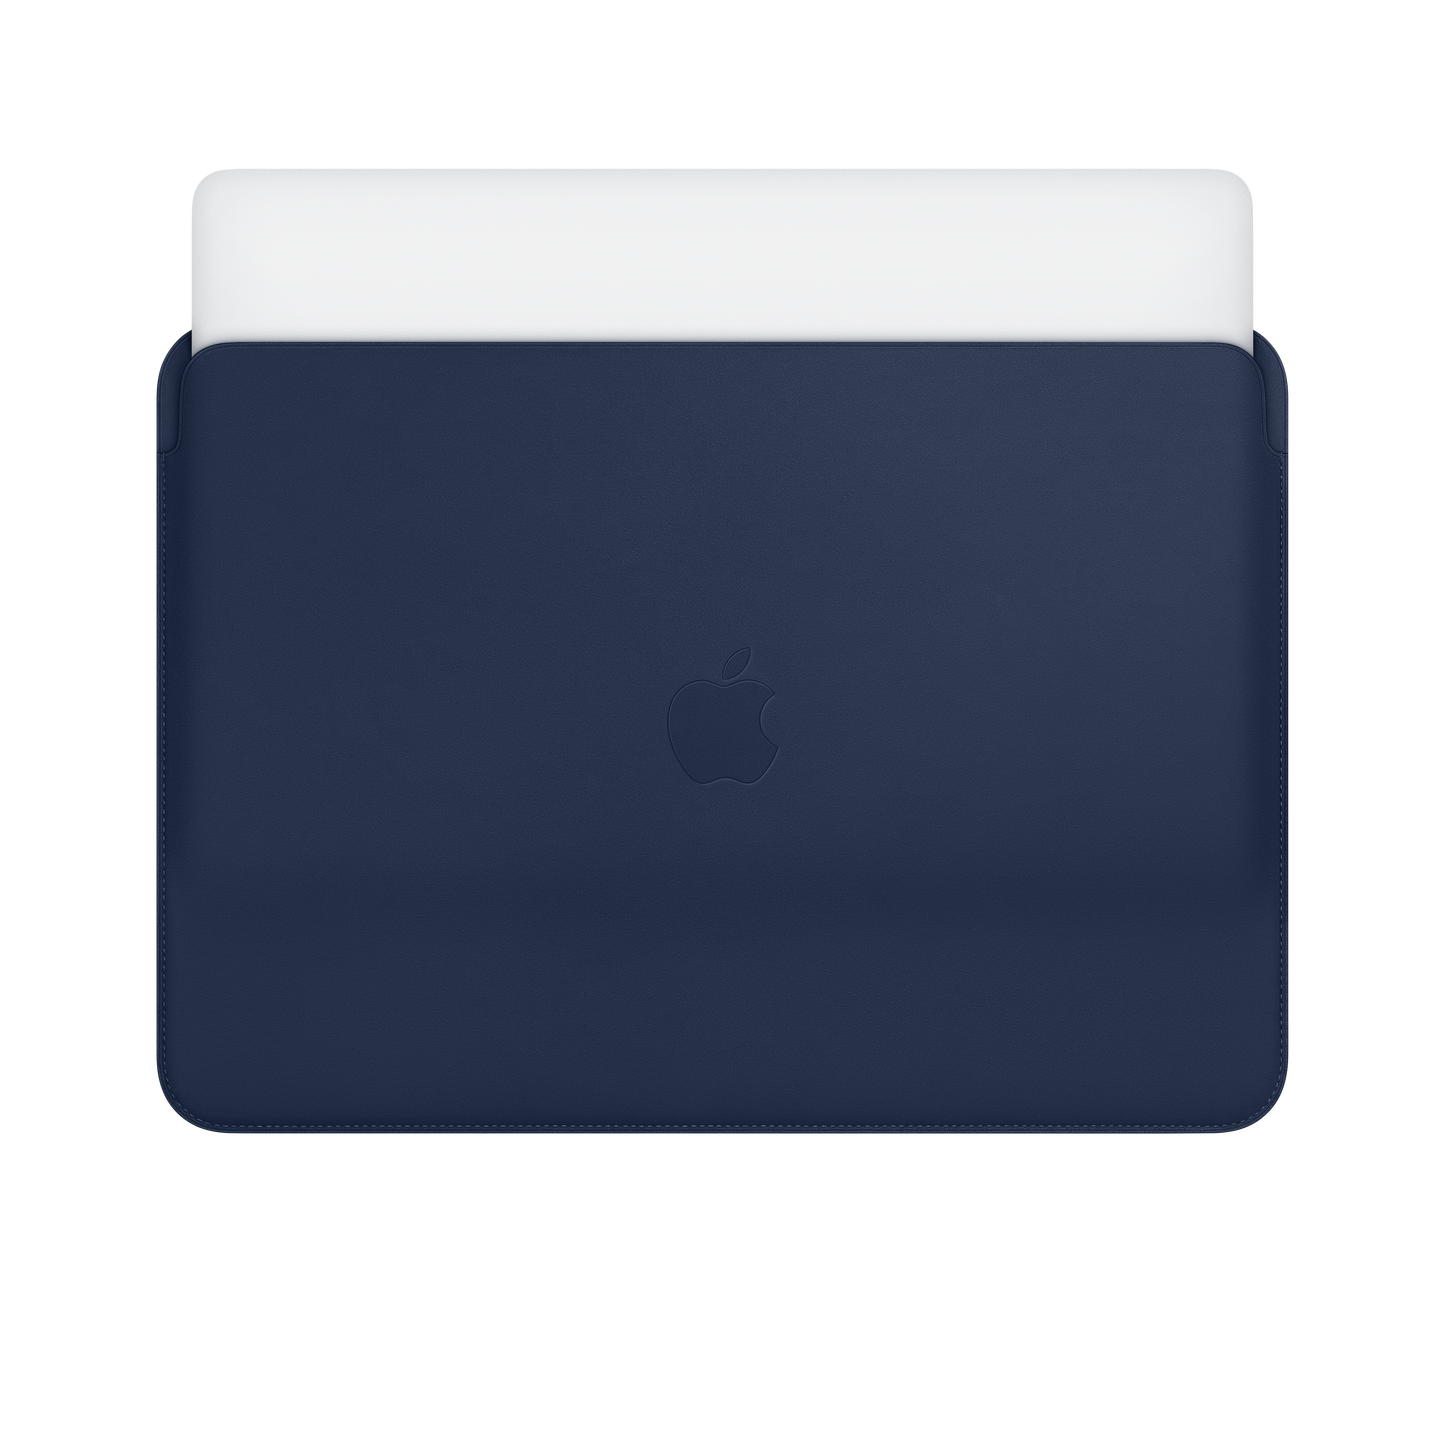 Funda de piel para el MacBook Air y el MacBook Pro de 13 pulgadas, Azul noche - Rossellimac